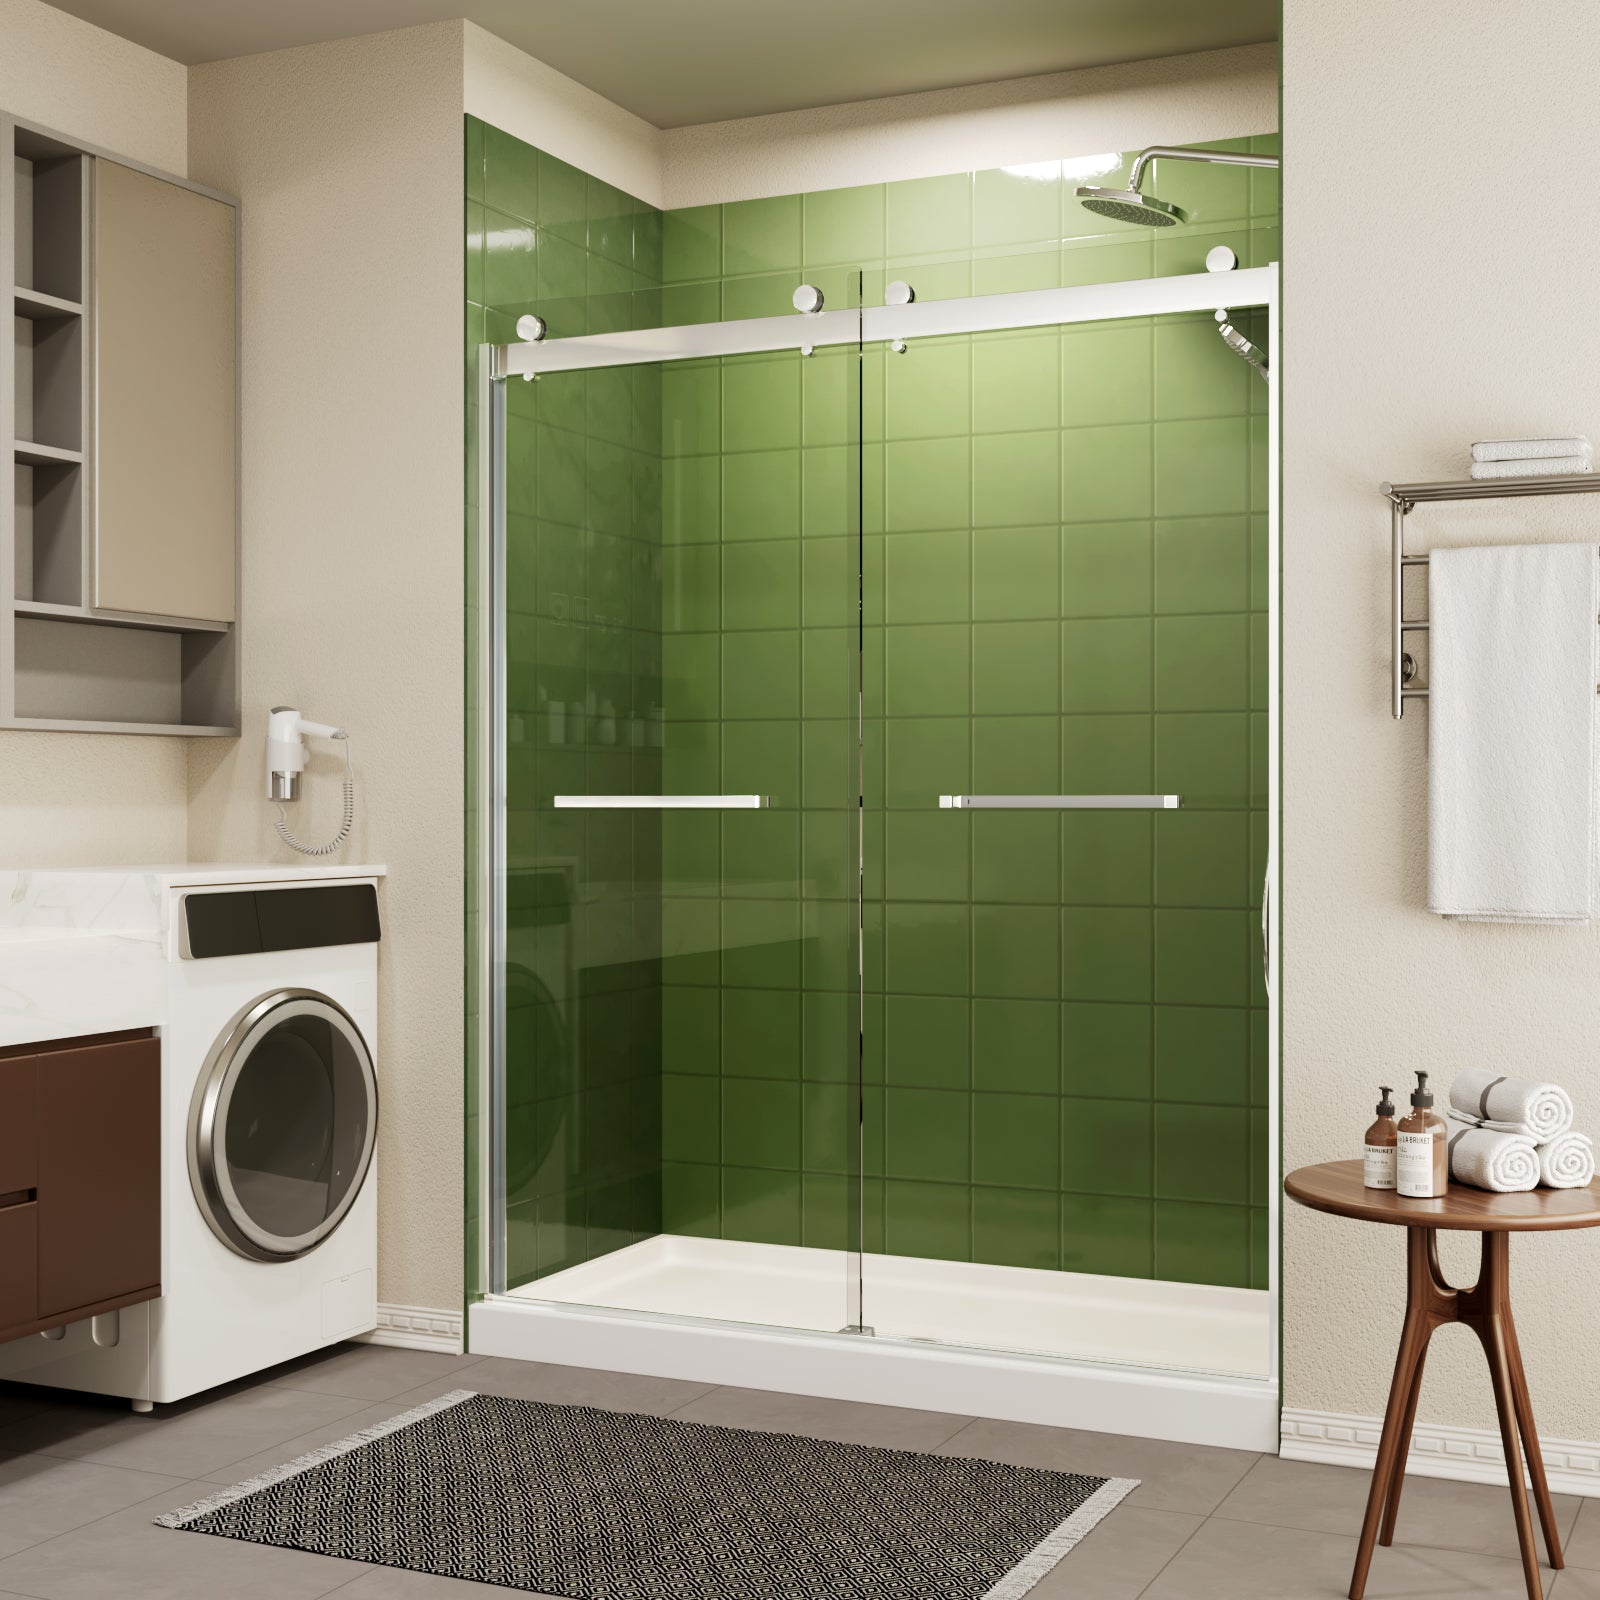 ace decor Sliding Glass Shower Doors Semi-Frameless color:chrome